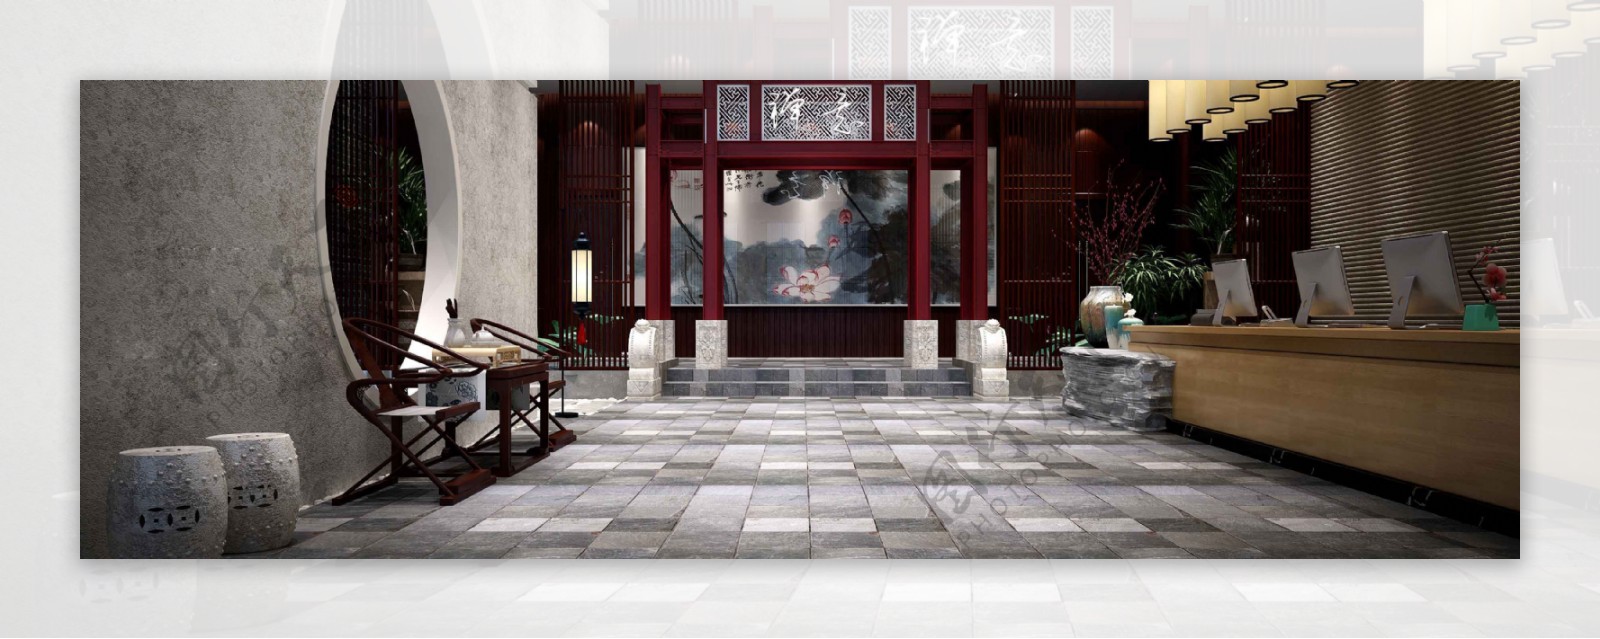 中式典雅酒店大厅大理石地板工装装修效果图